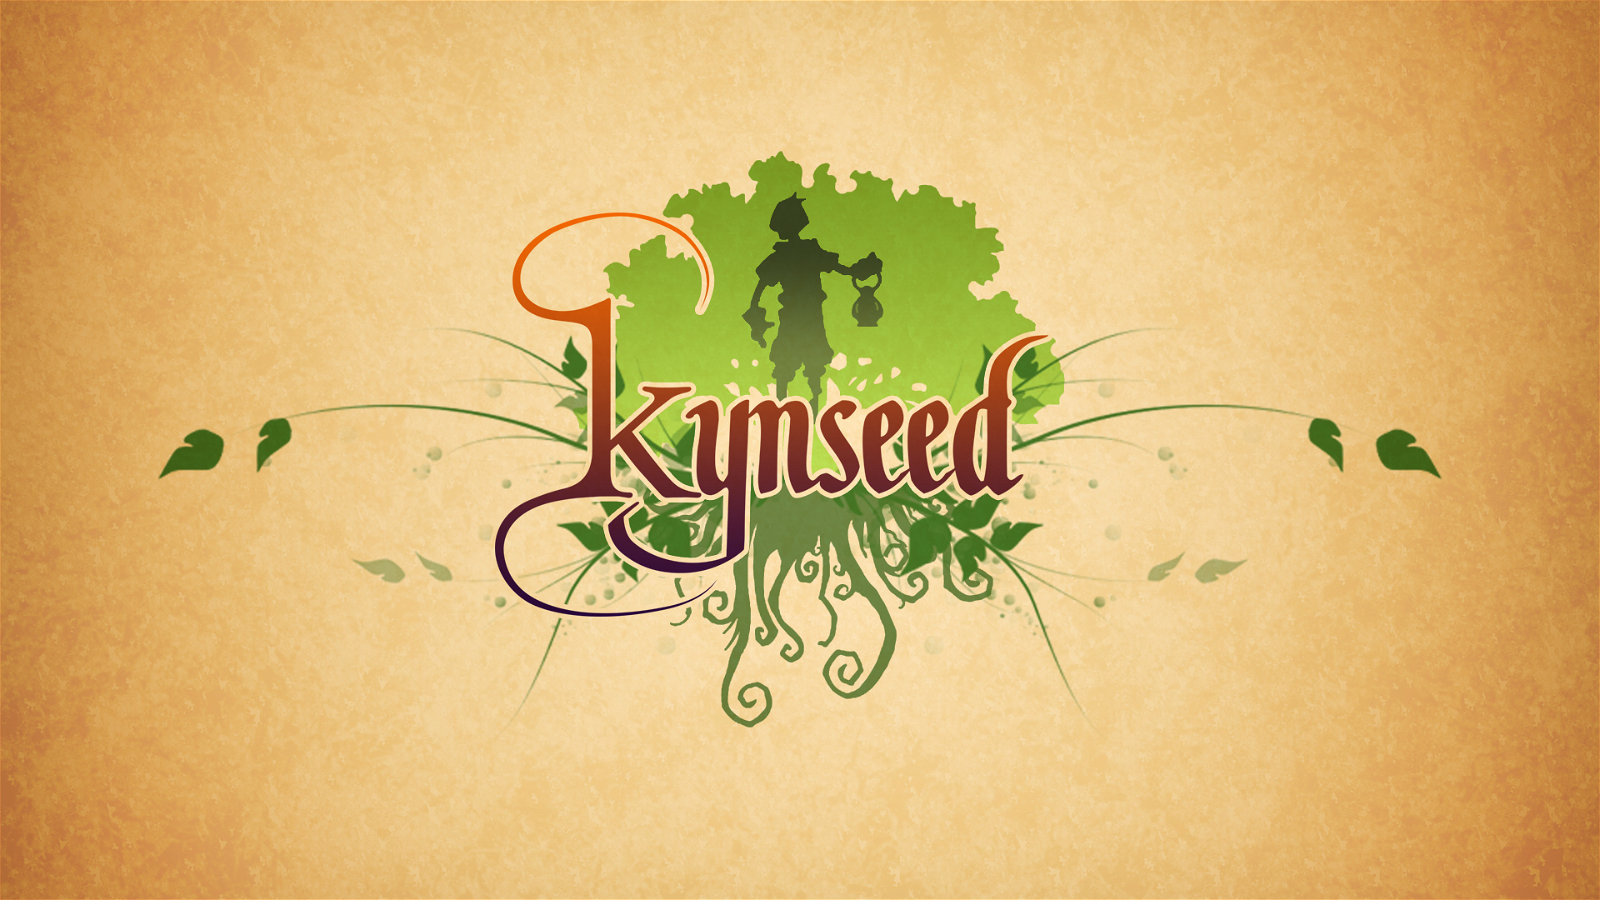 Image of Kynseed